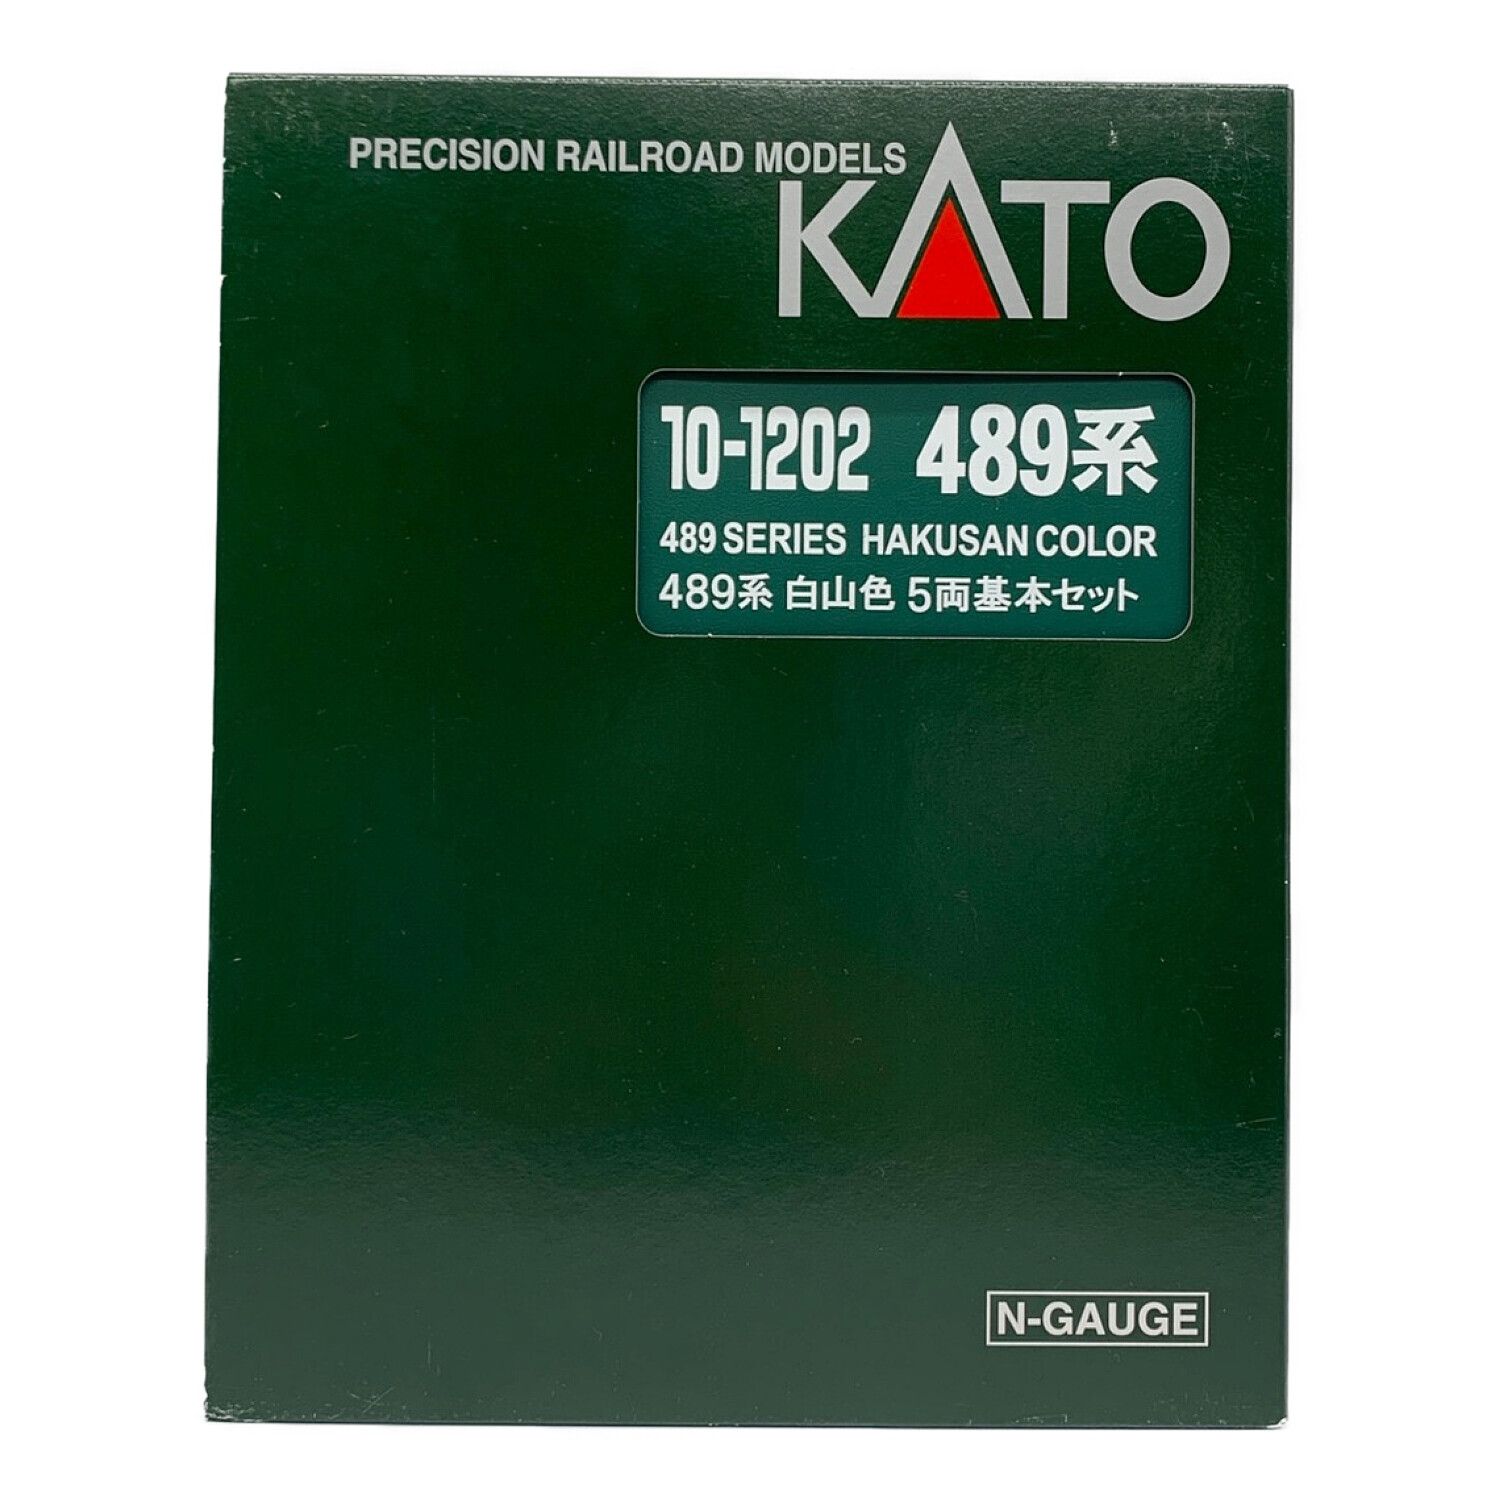 KATO (カトー) Nゲージ 489系 白山色 5両基本セット 動作確認